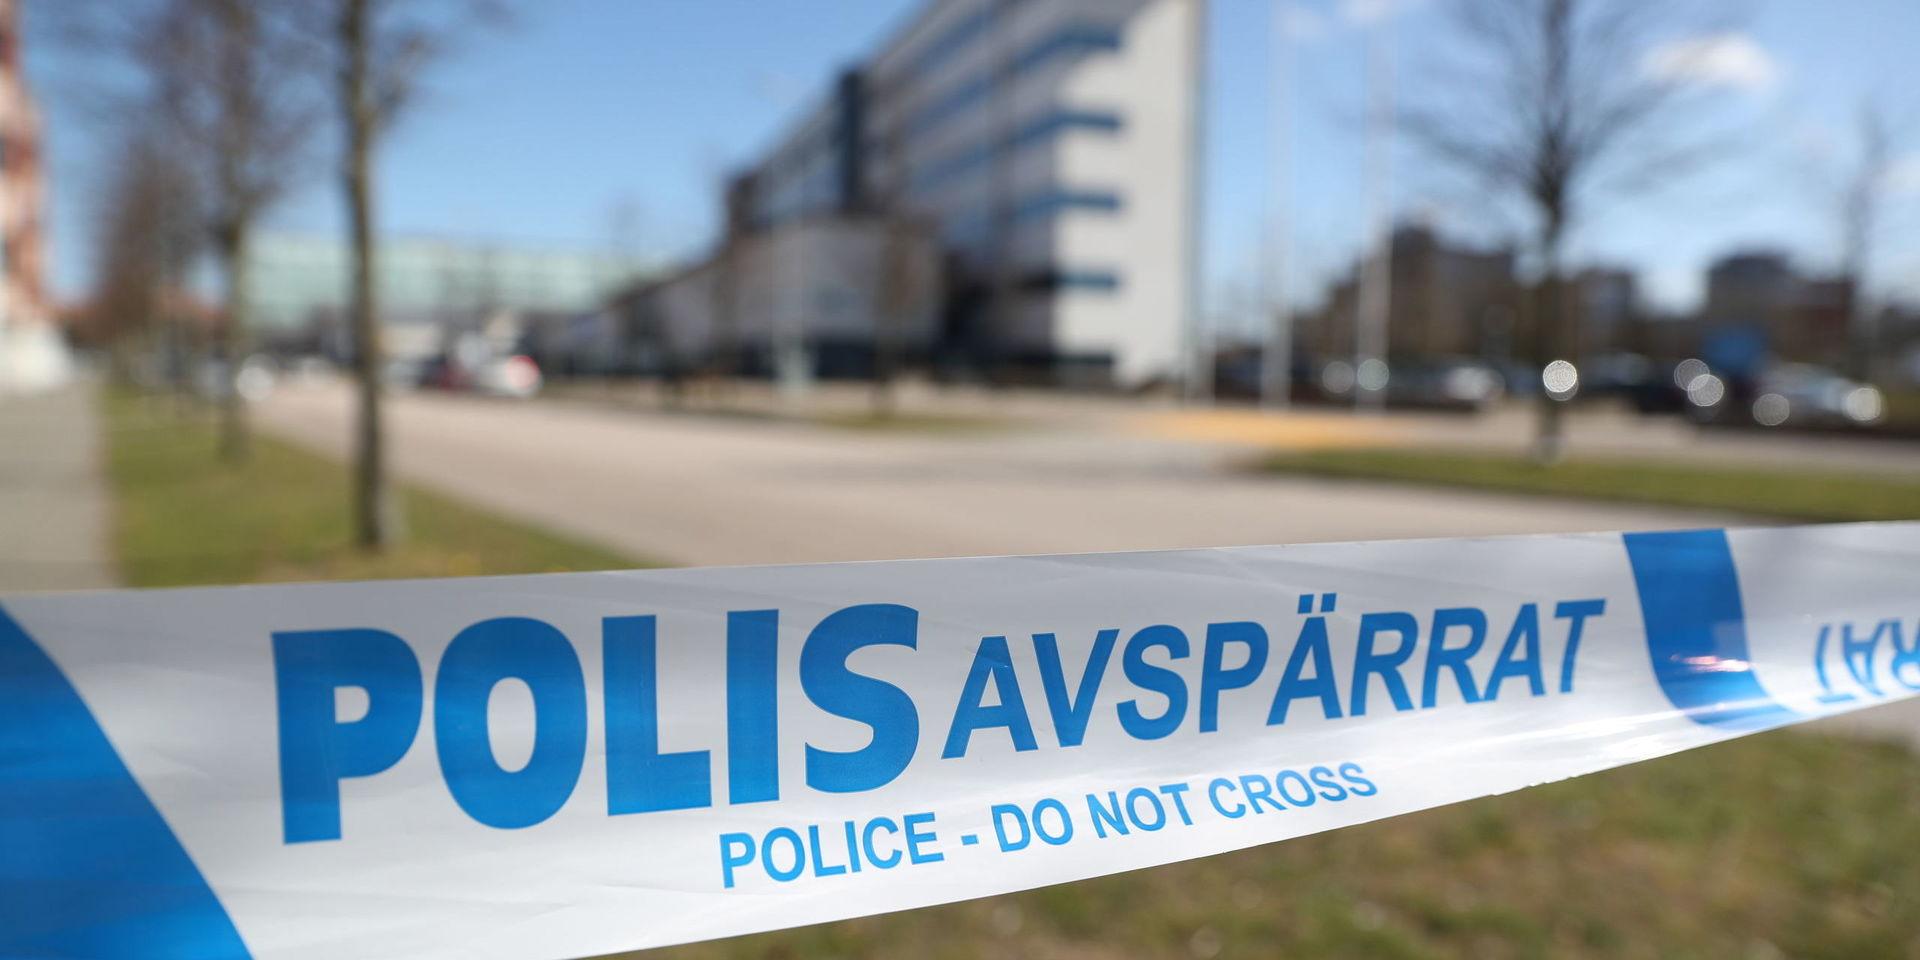 Delar av polishuset i Helsingborg har tidigare varit utrymda sedan ett misstänkt farligt föremål tagits dit av en person som ville lämna hittegods.